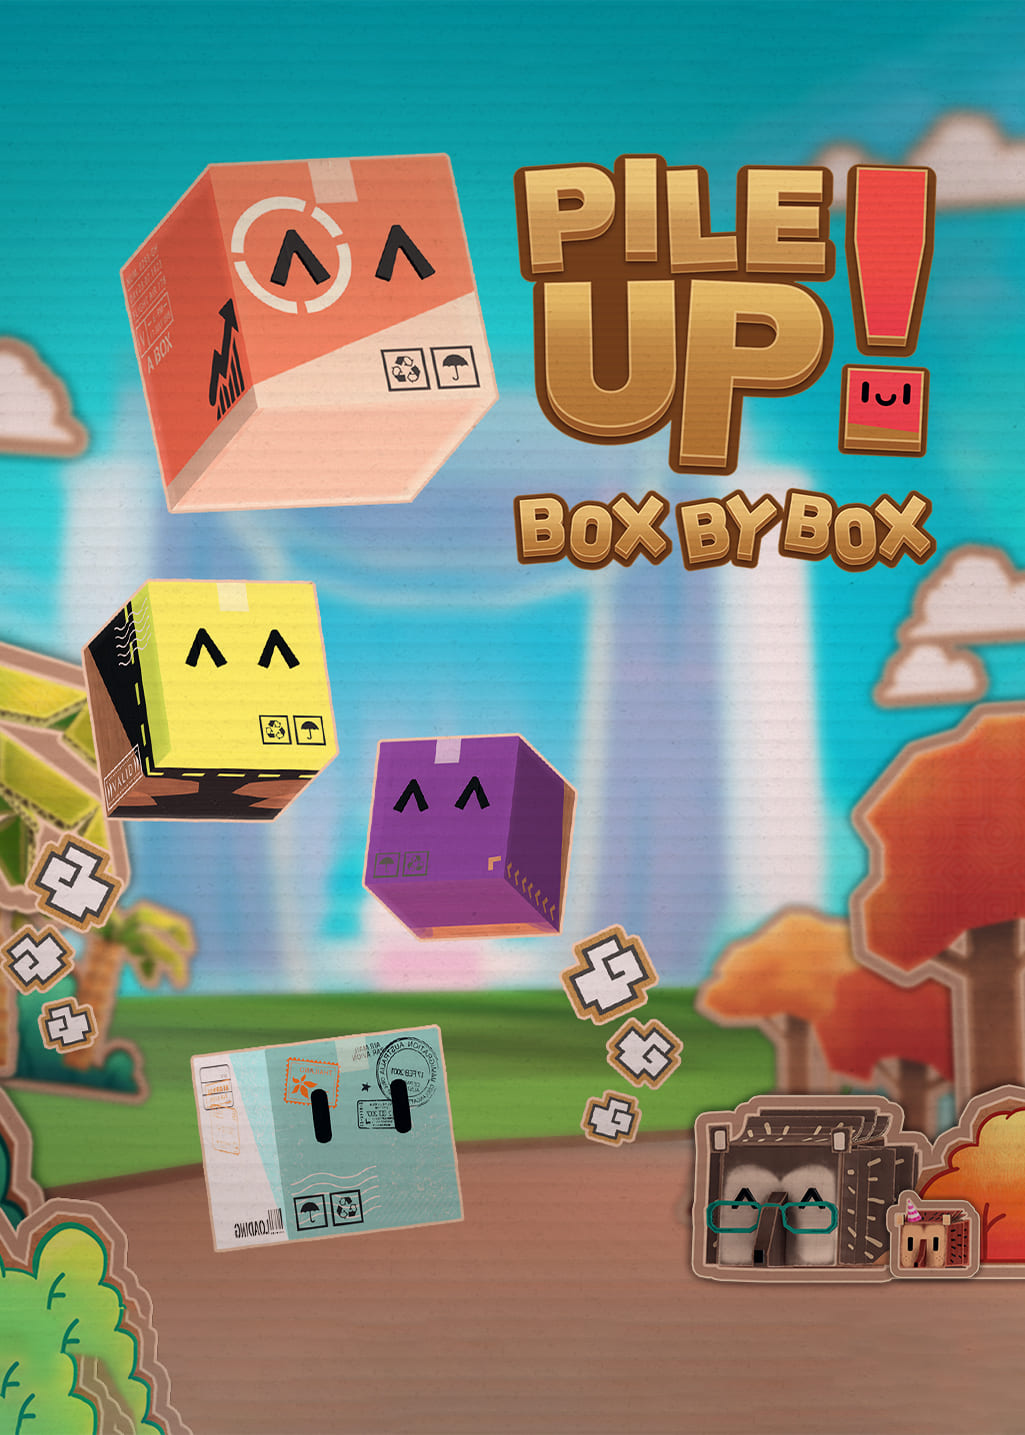 PileUp! Box by Box